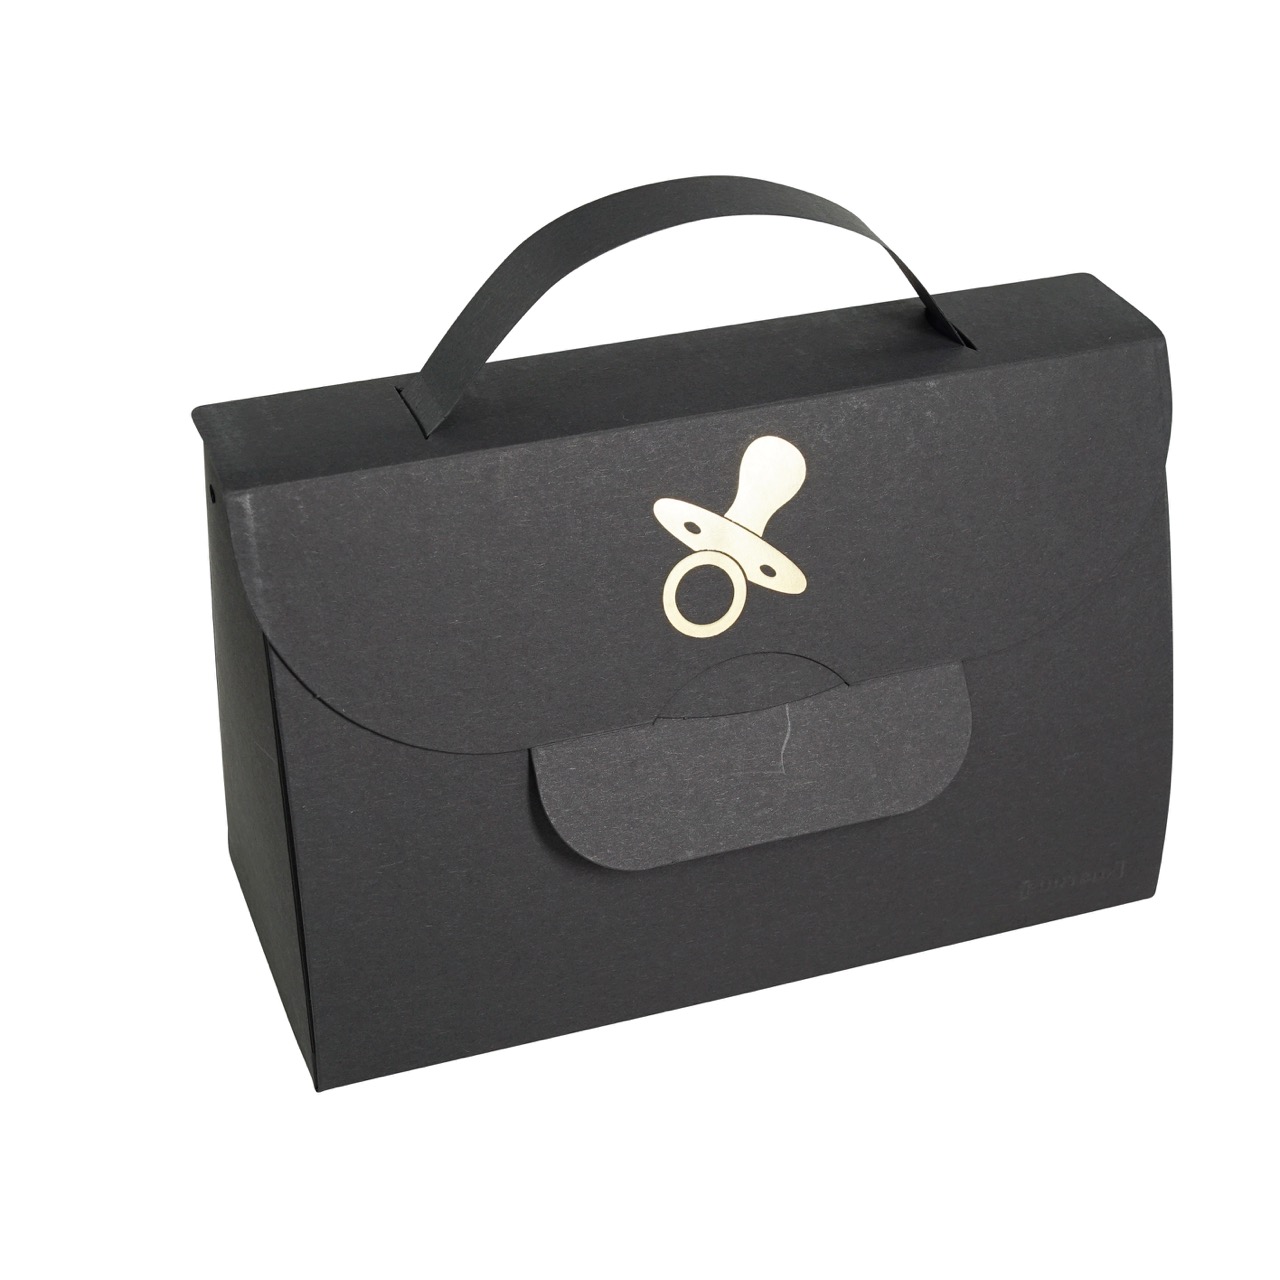 BUNTBOX Handbag Sucette d'or | Le sac en main en carton